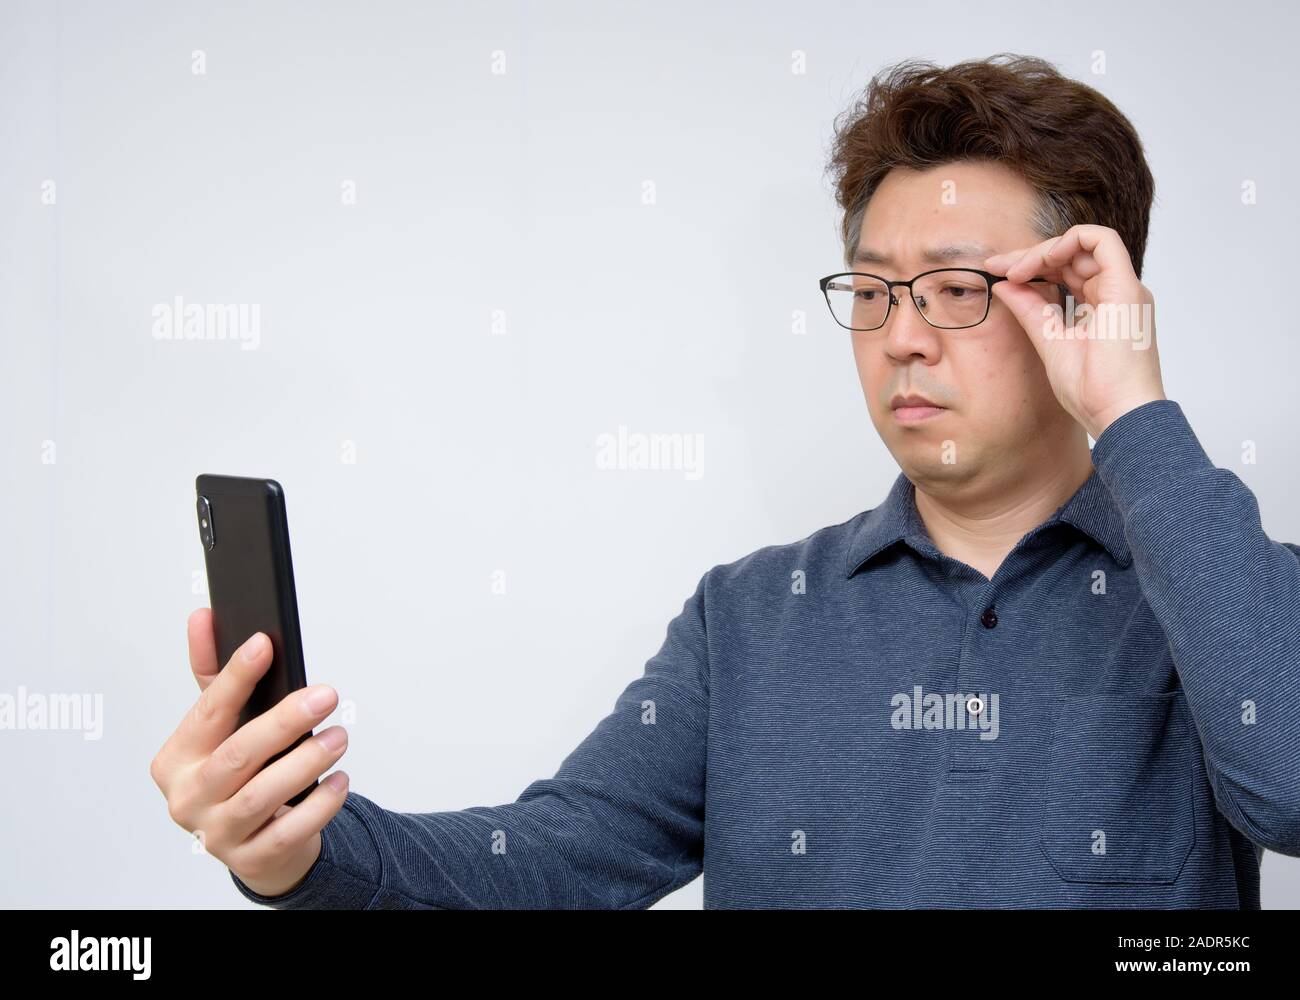 Asiatische Männer, die versuchen, etwas auf seinem Handy zu lesen. schlechte Sicht, alterssichtigkeit, Kurzsichtigkeit. Stockfoto